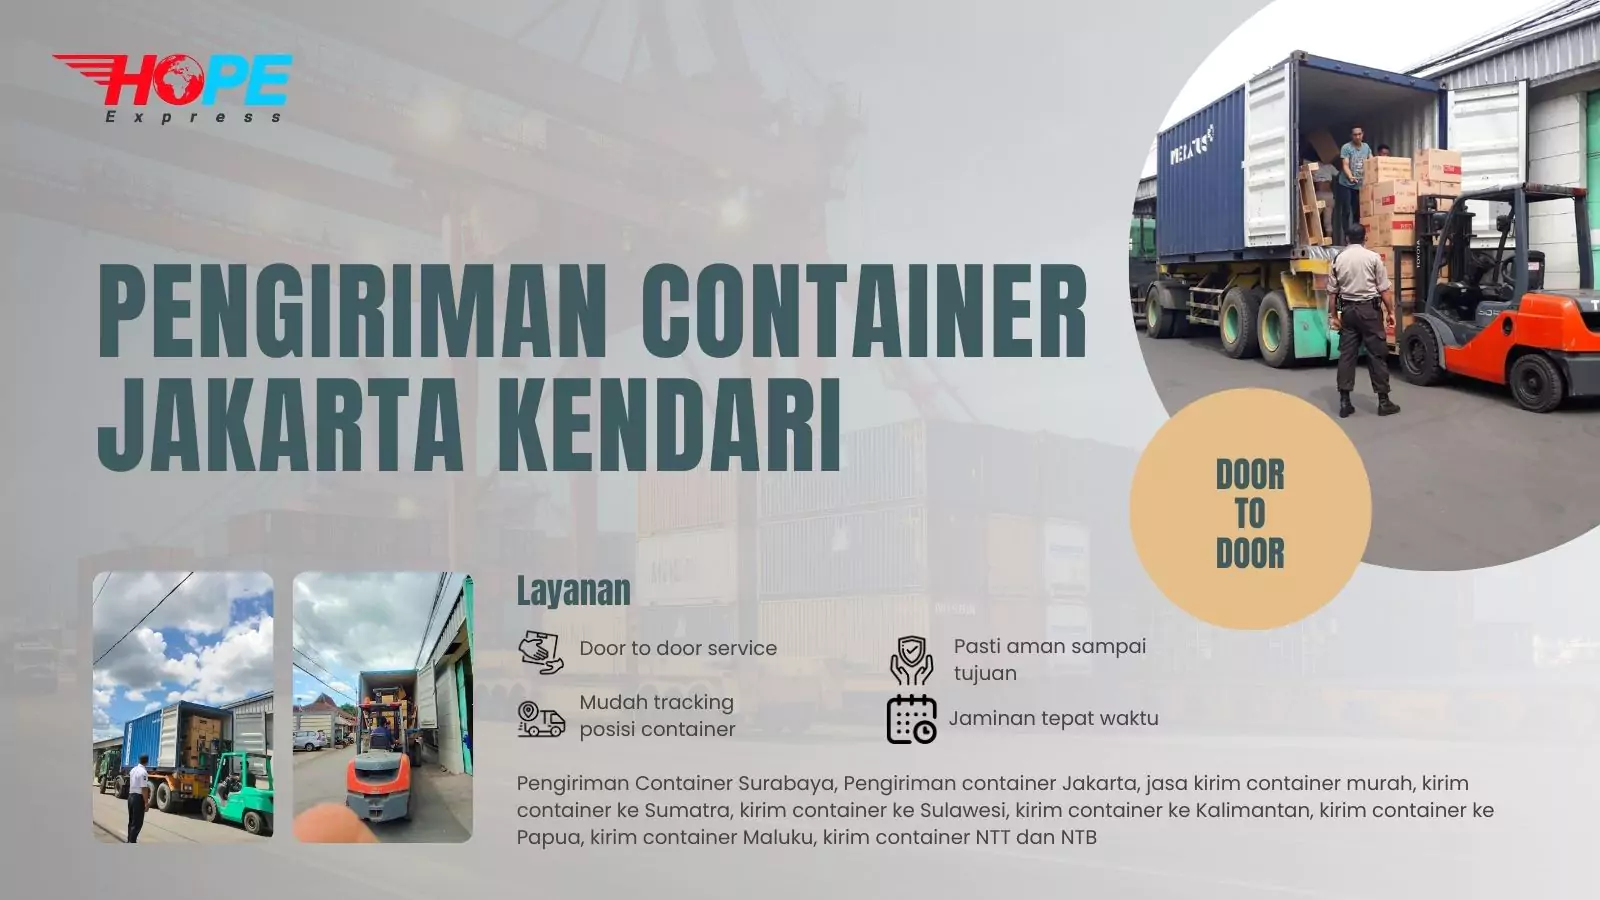 Pengiriman Container Jakarta Kendari